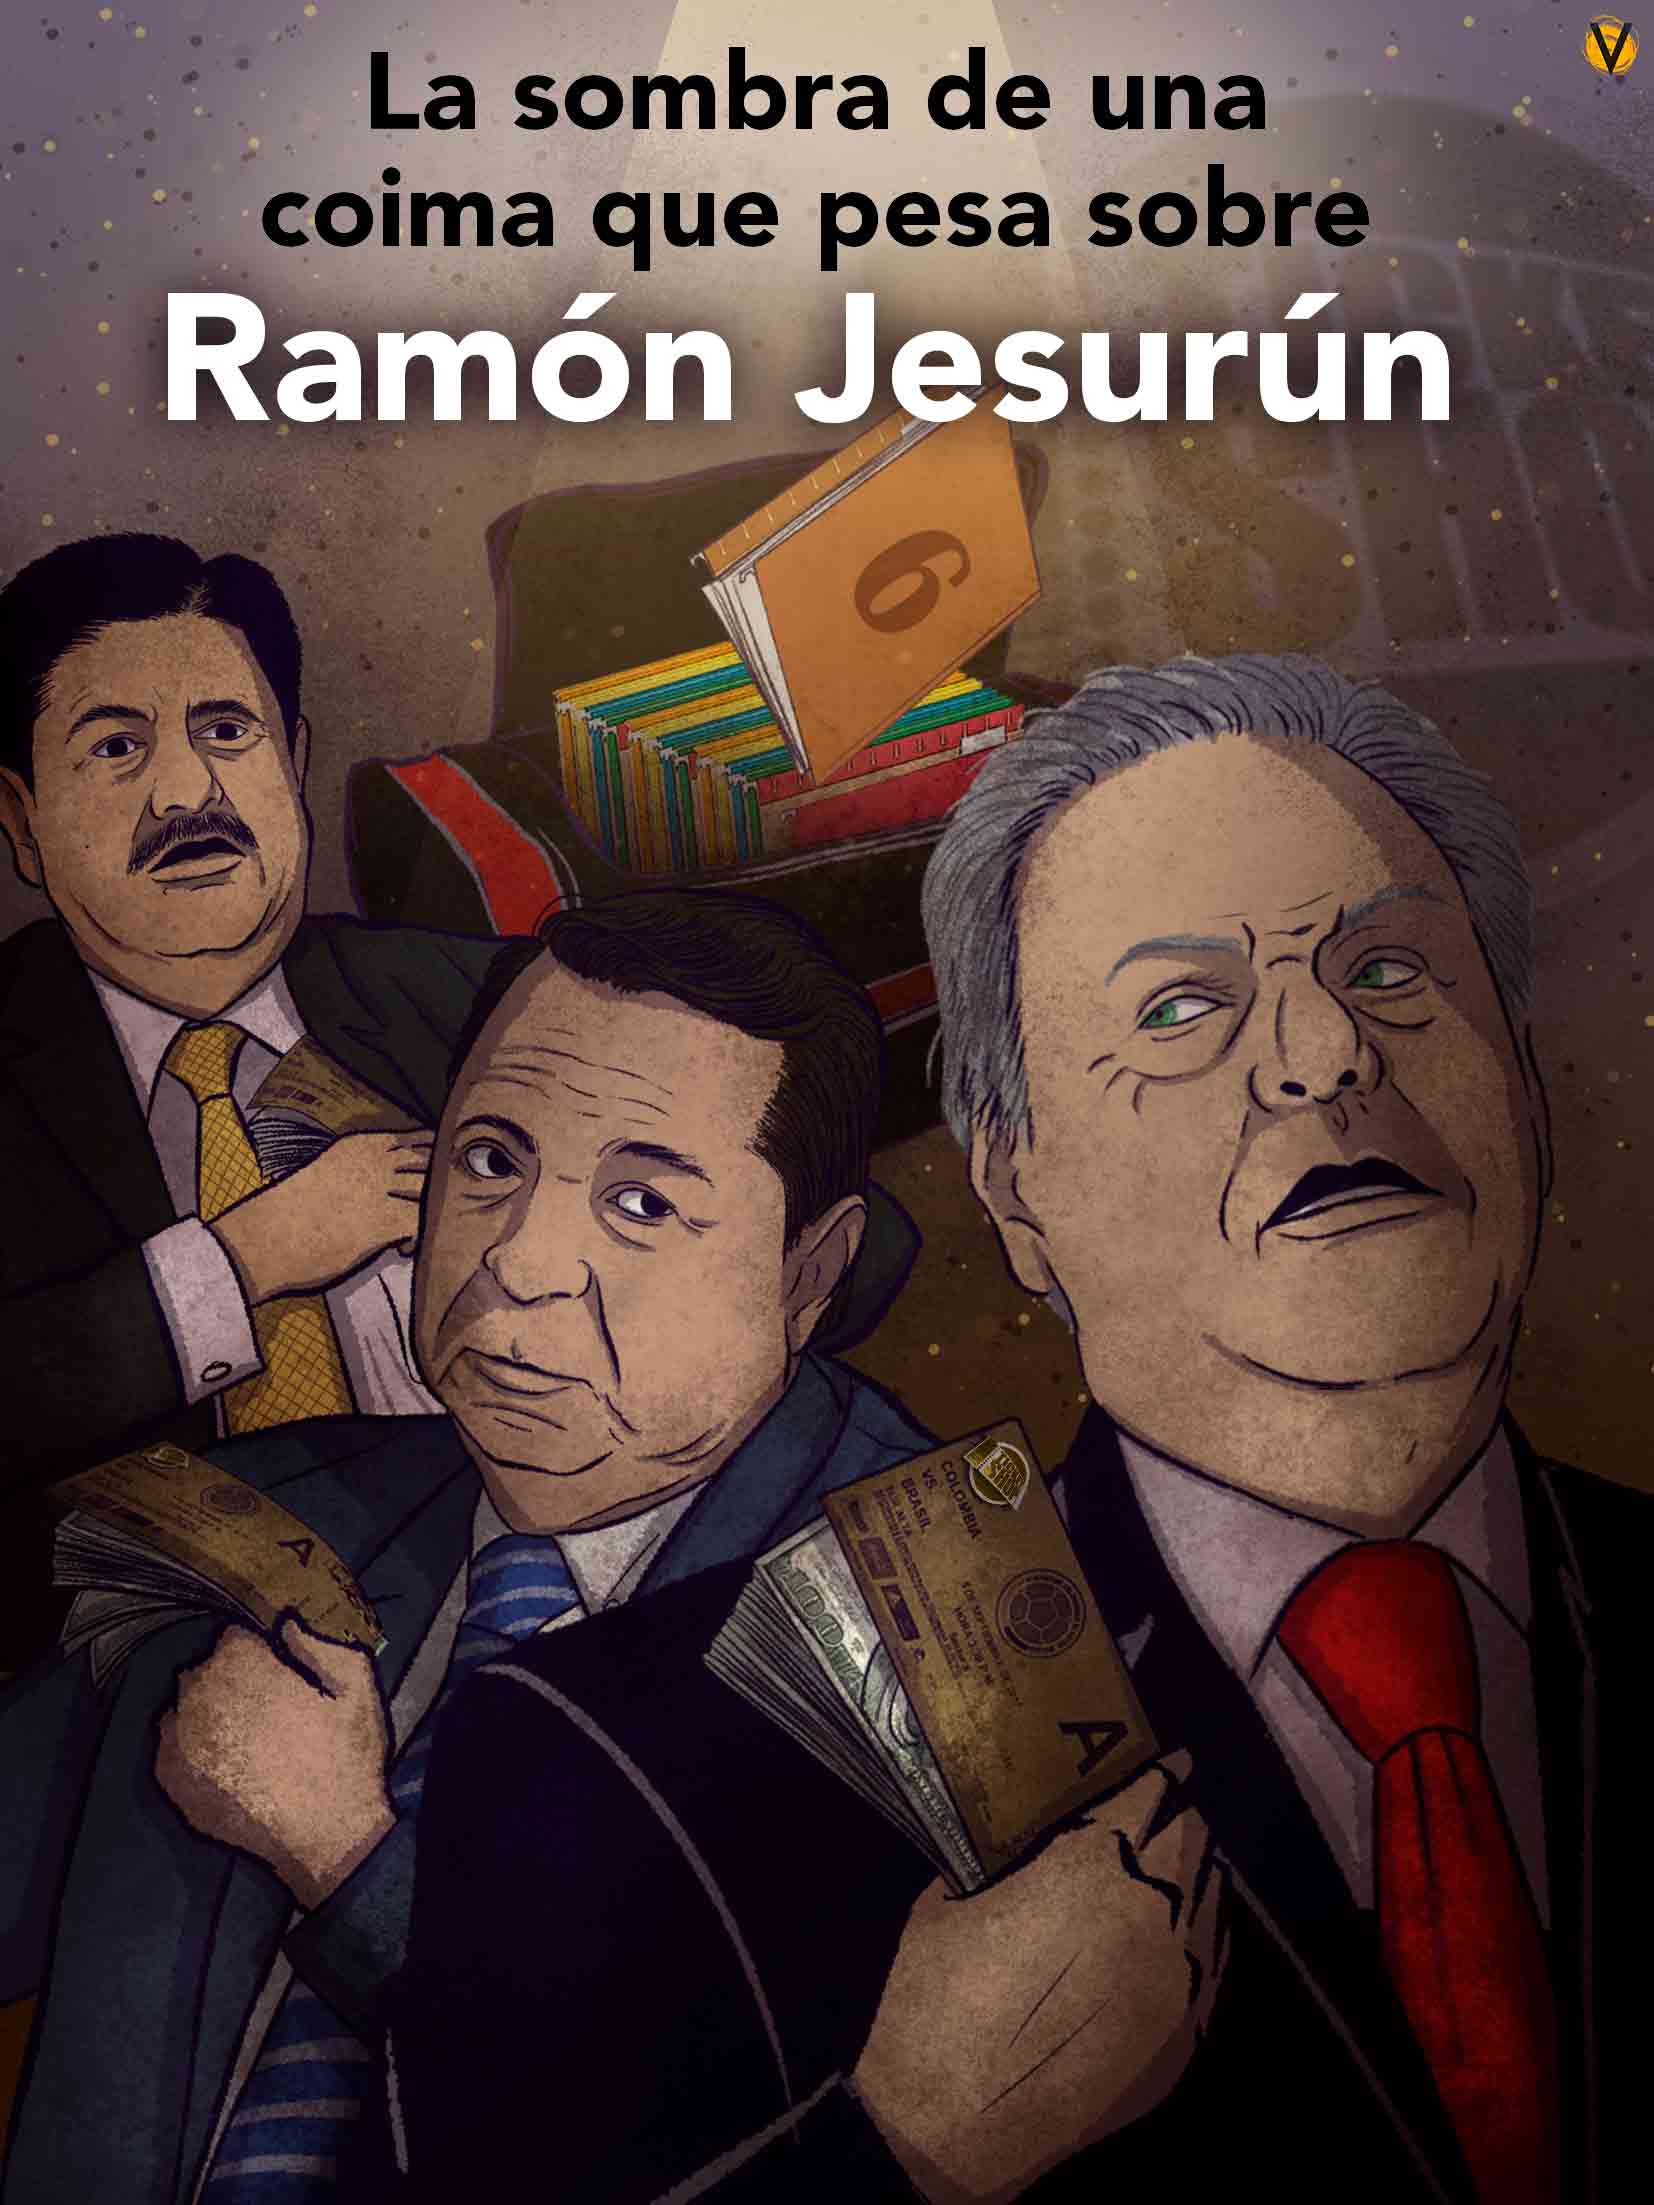 Fiscalía halló indicios de coima que señala a Ramón Jesurún